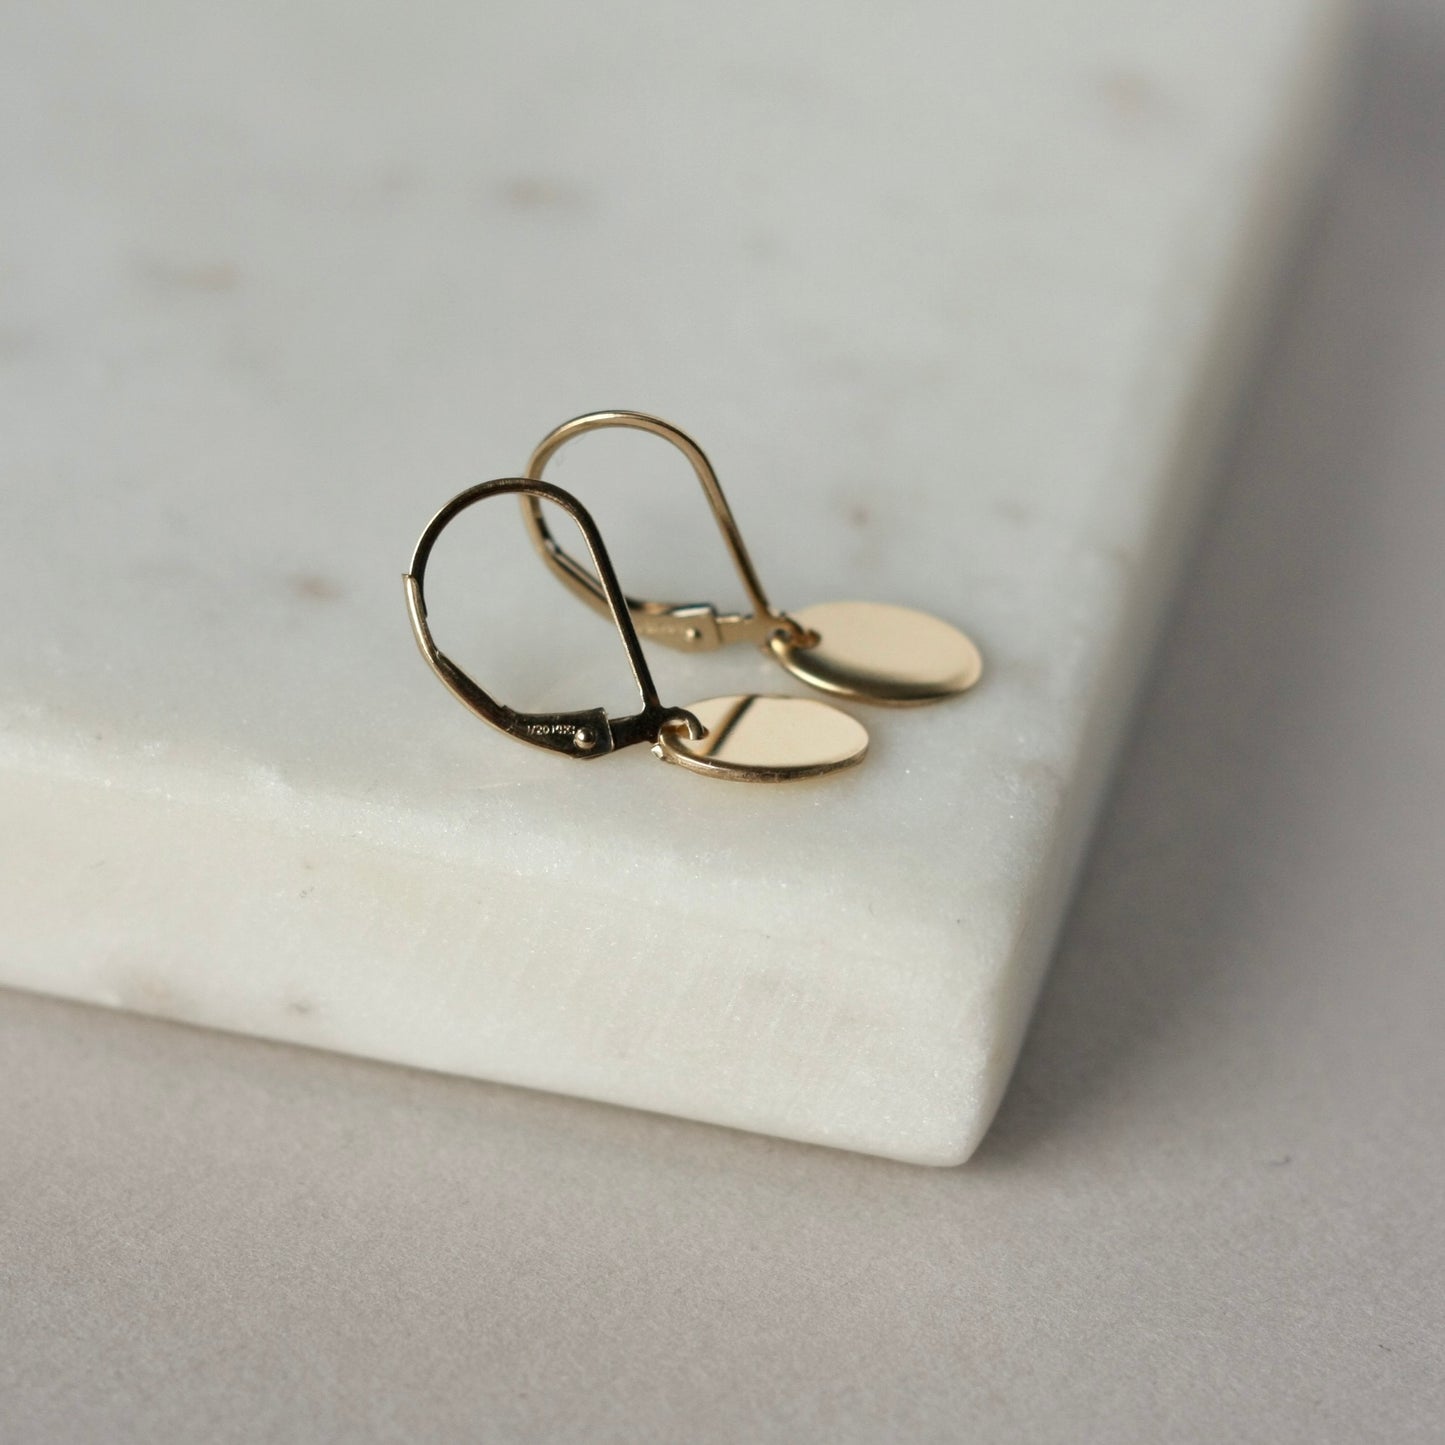 Gold Oval Dangle Earrings